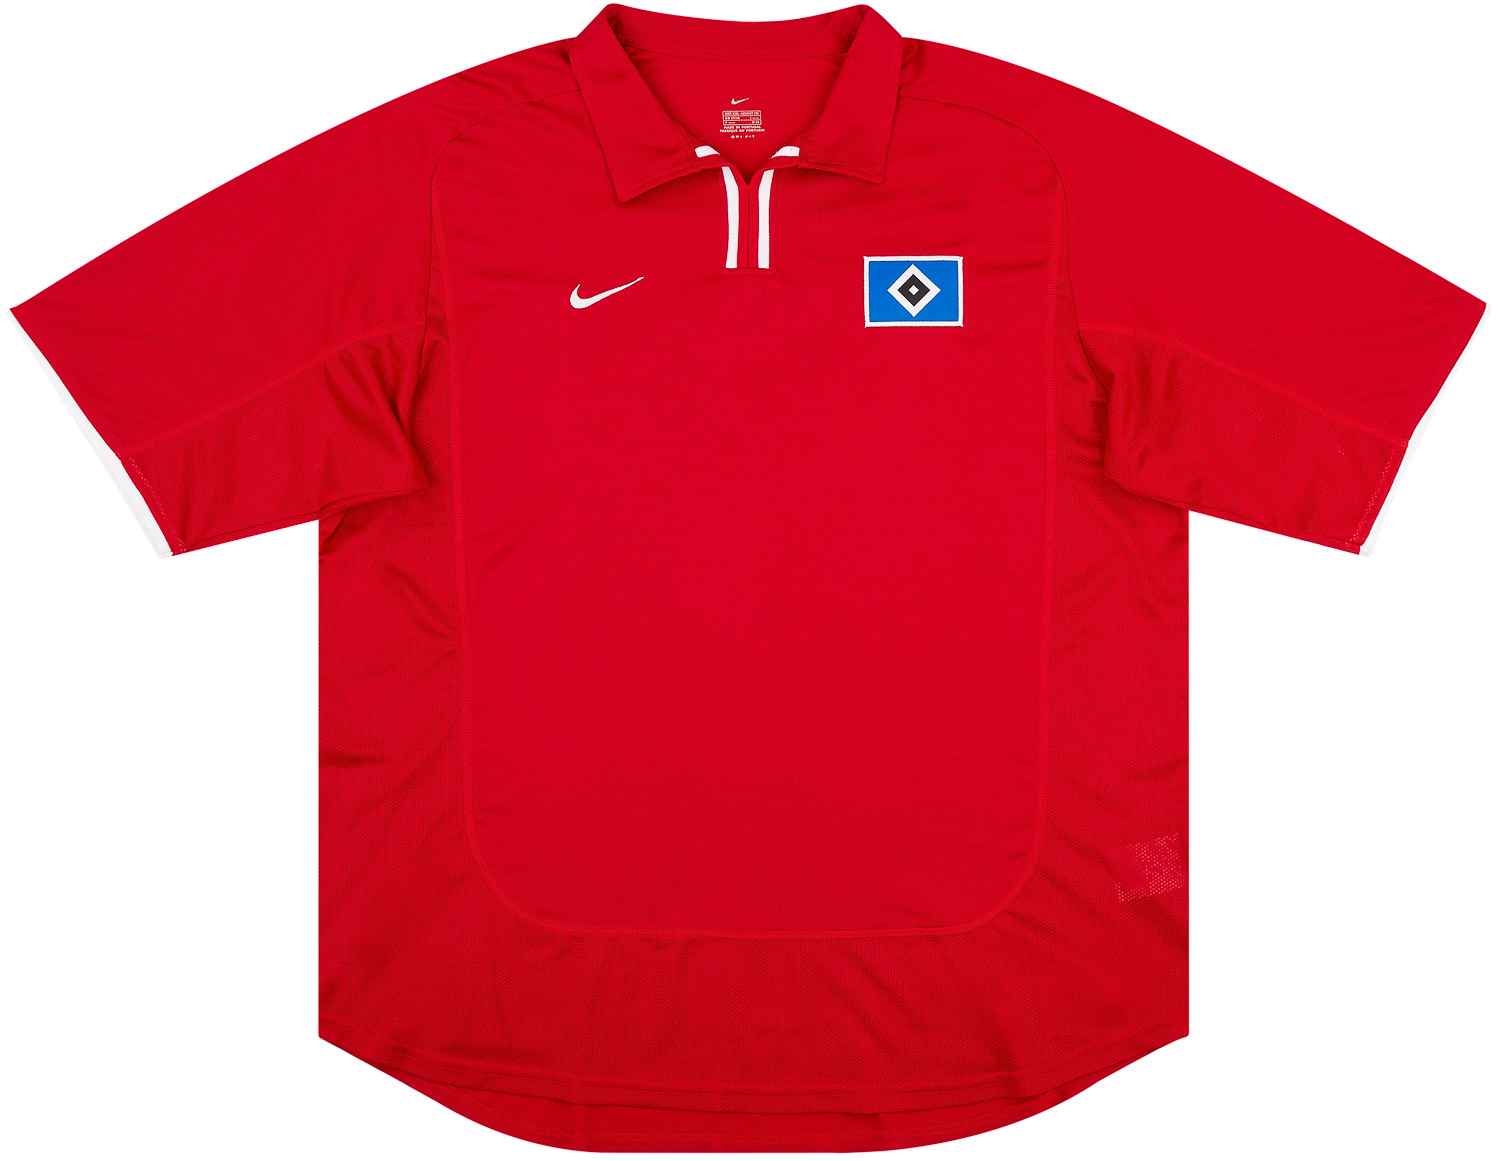 2001-02 Hamburg Player Issue Third Shirt - 8/10 - ()